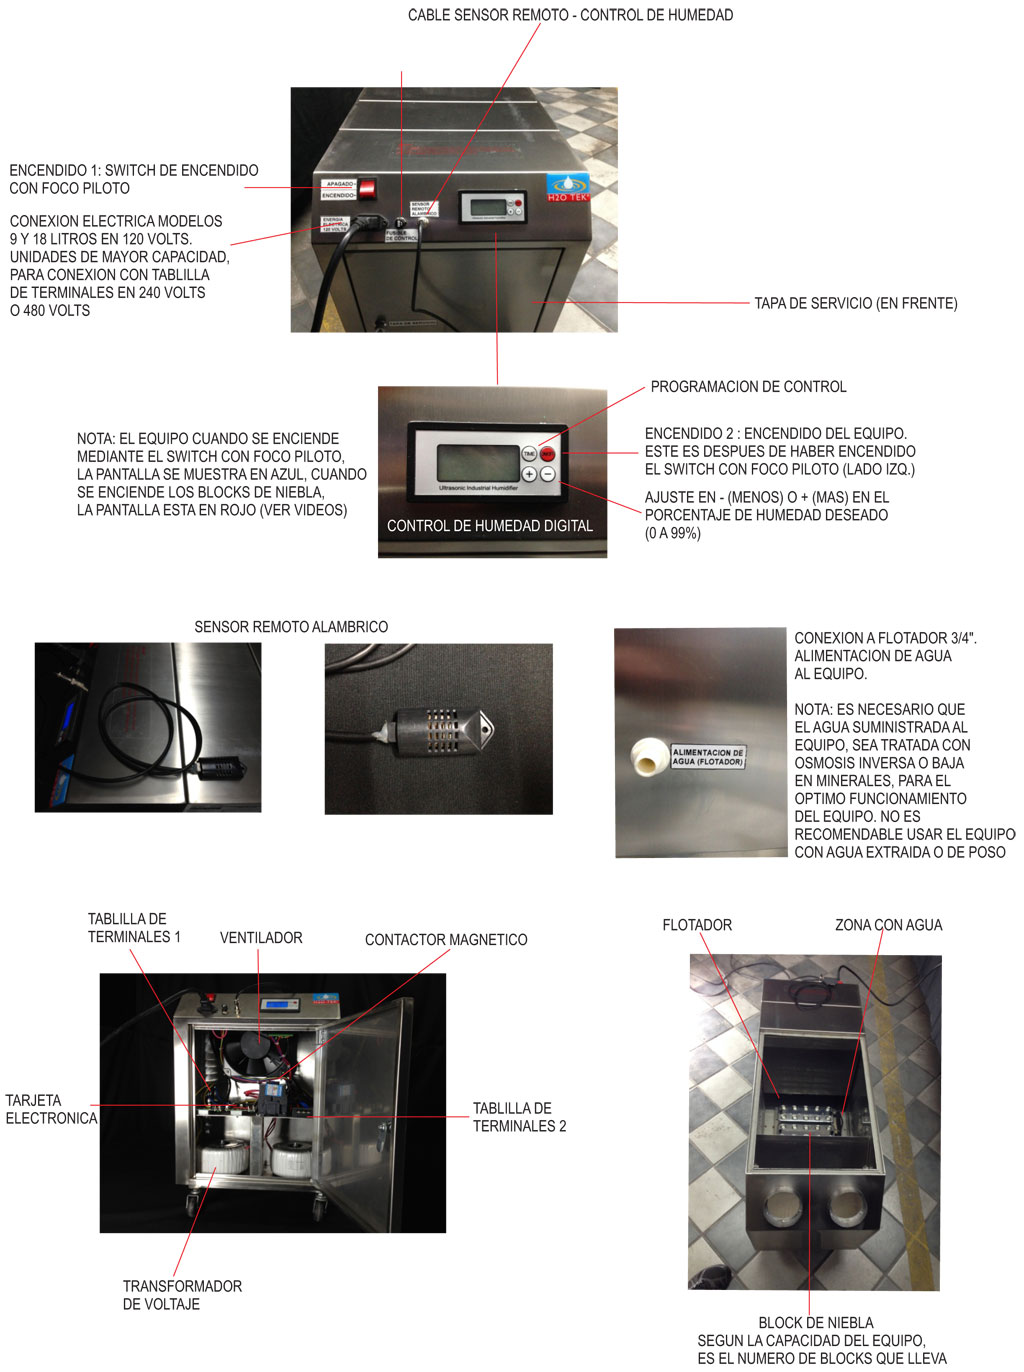 Humidificador ultrasónico portátil comercial-industrial linea Hultra cap. 3  lt/hr 120v marca H2OTEK